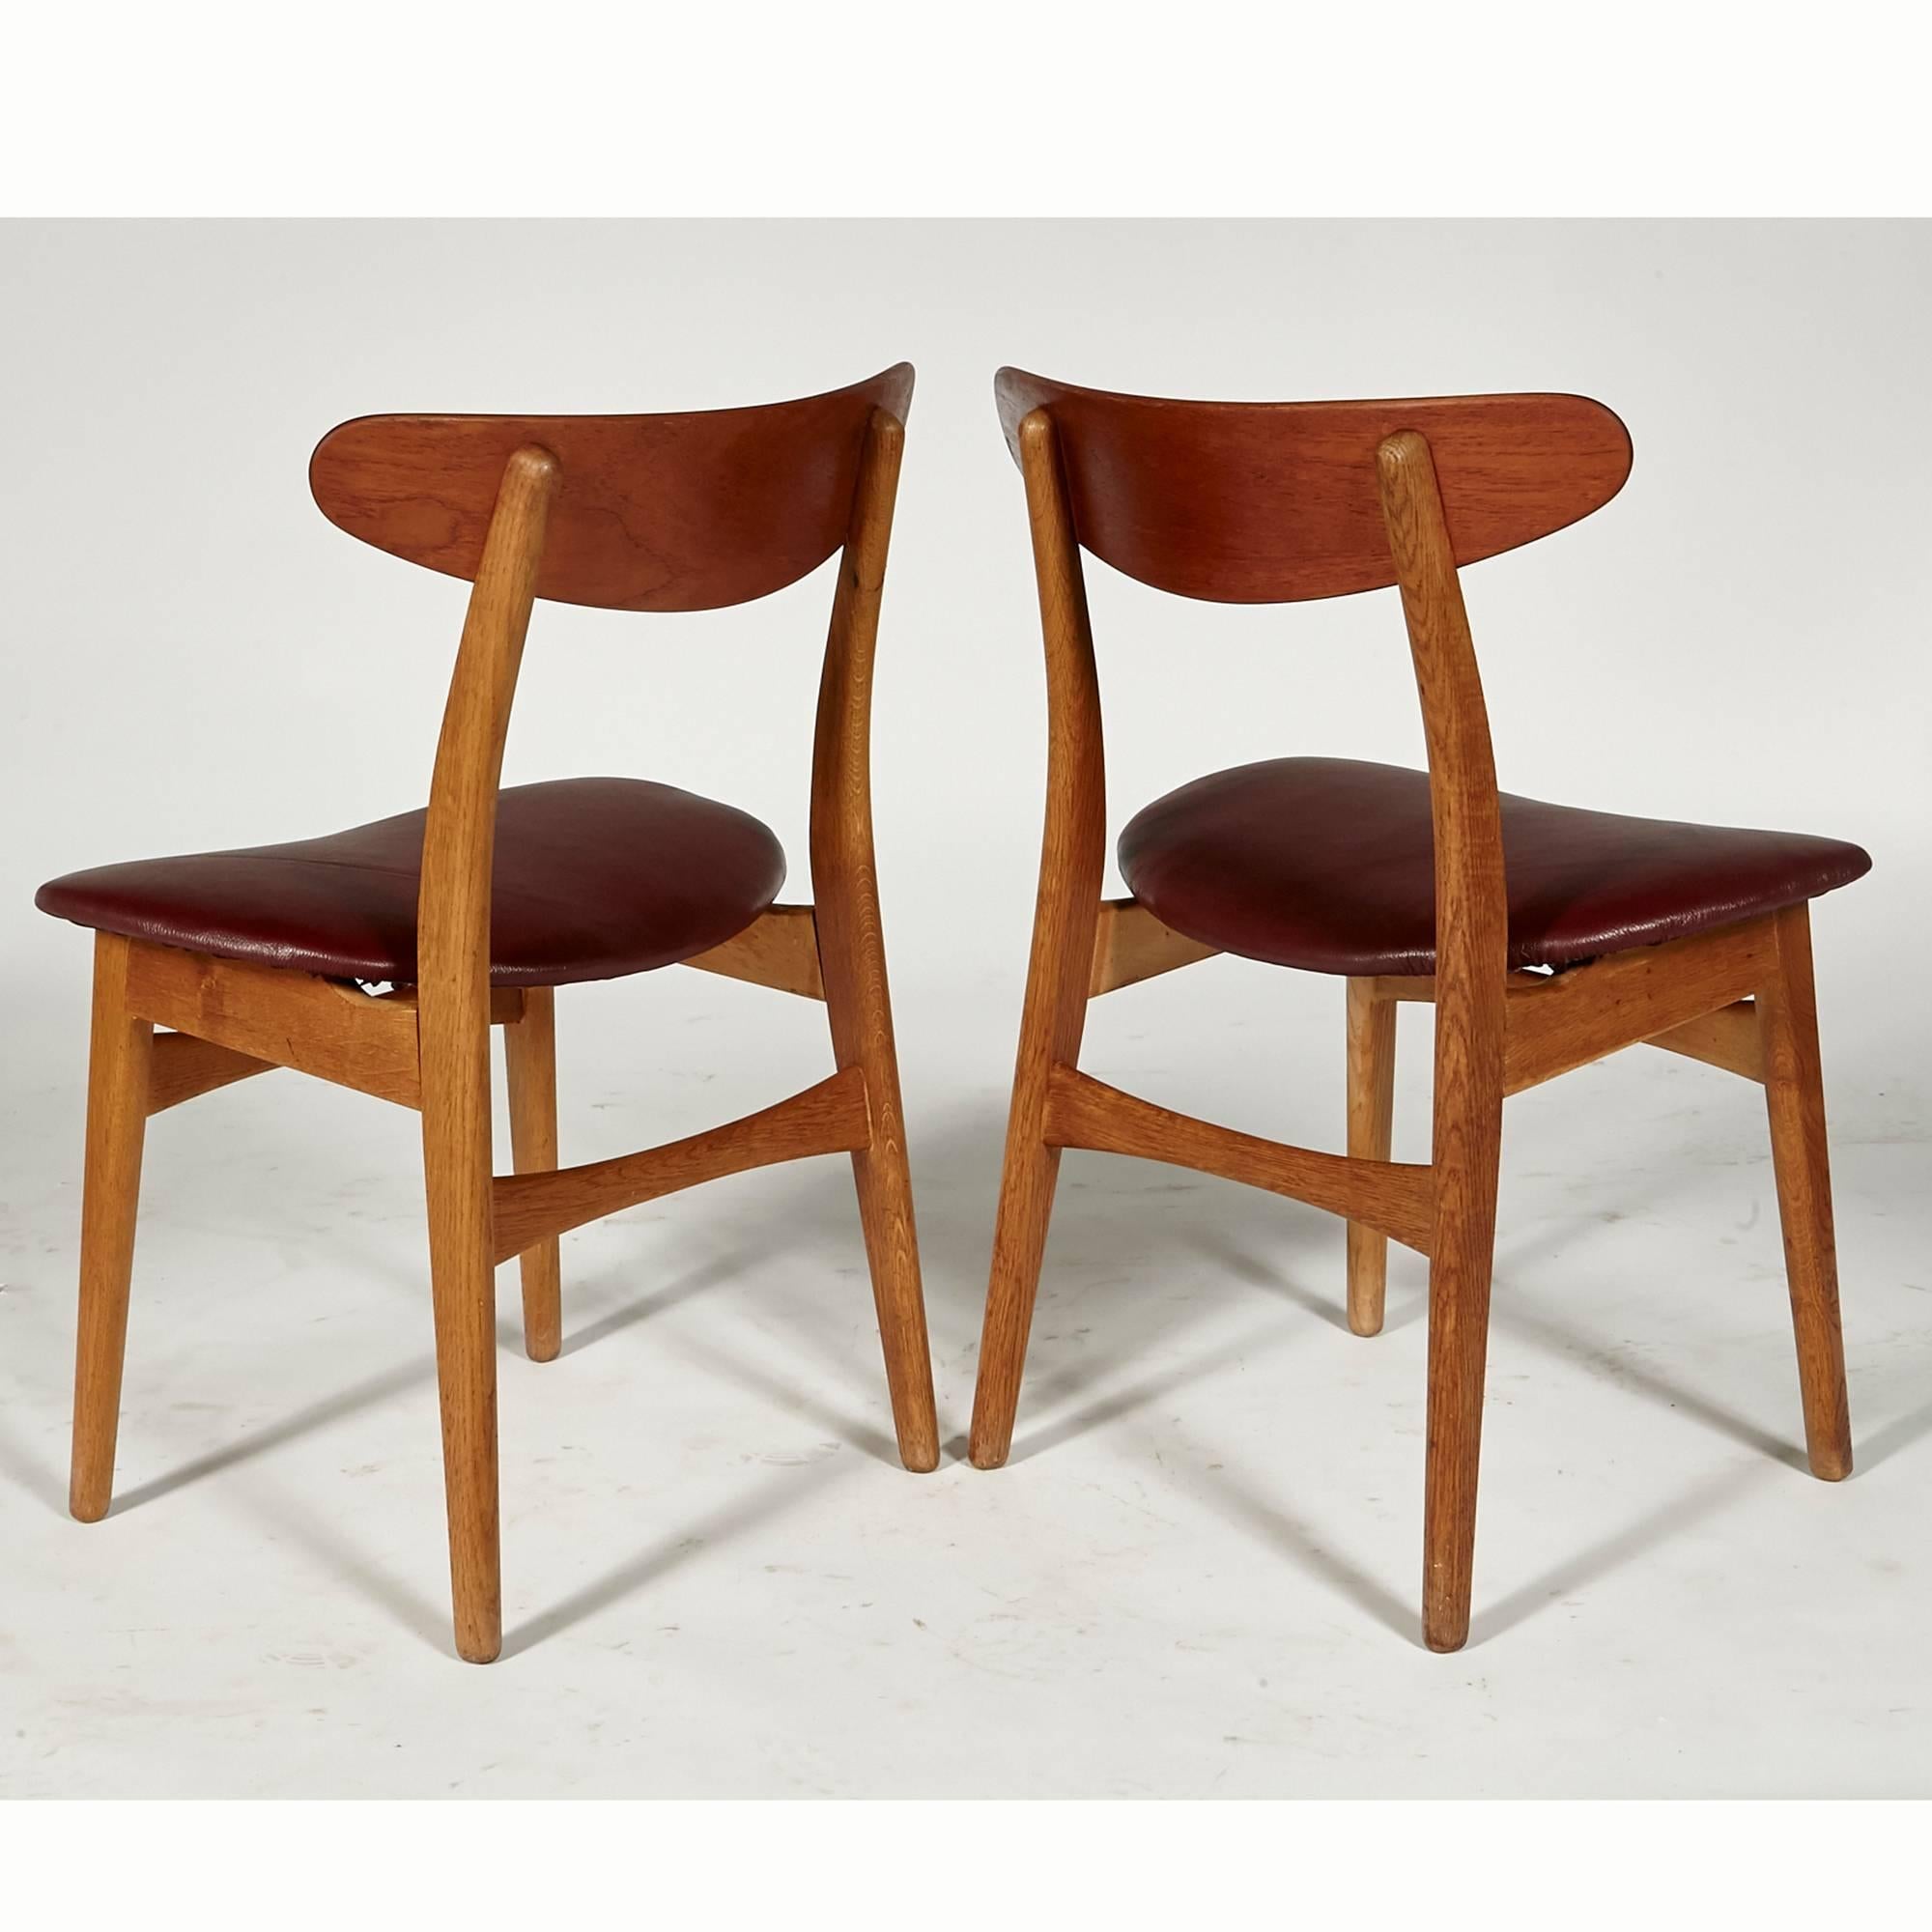 Hans J Wegner for Carl Hansen Teak Dining Chairs 1951 Denmark, Set of Six 1